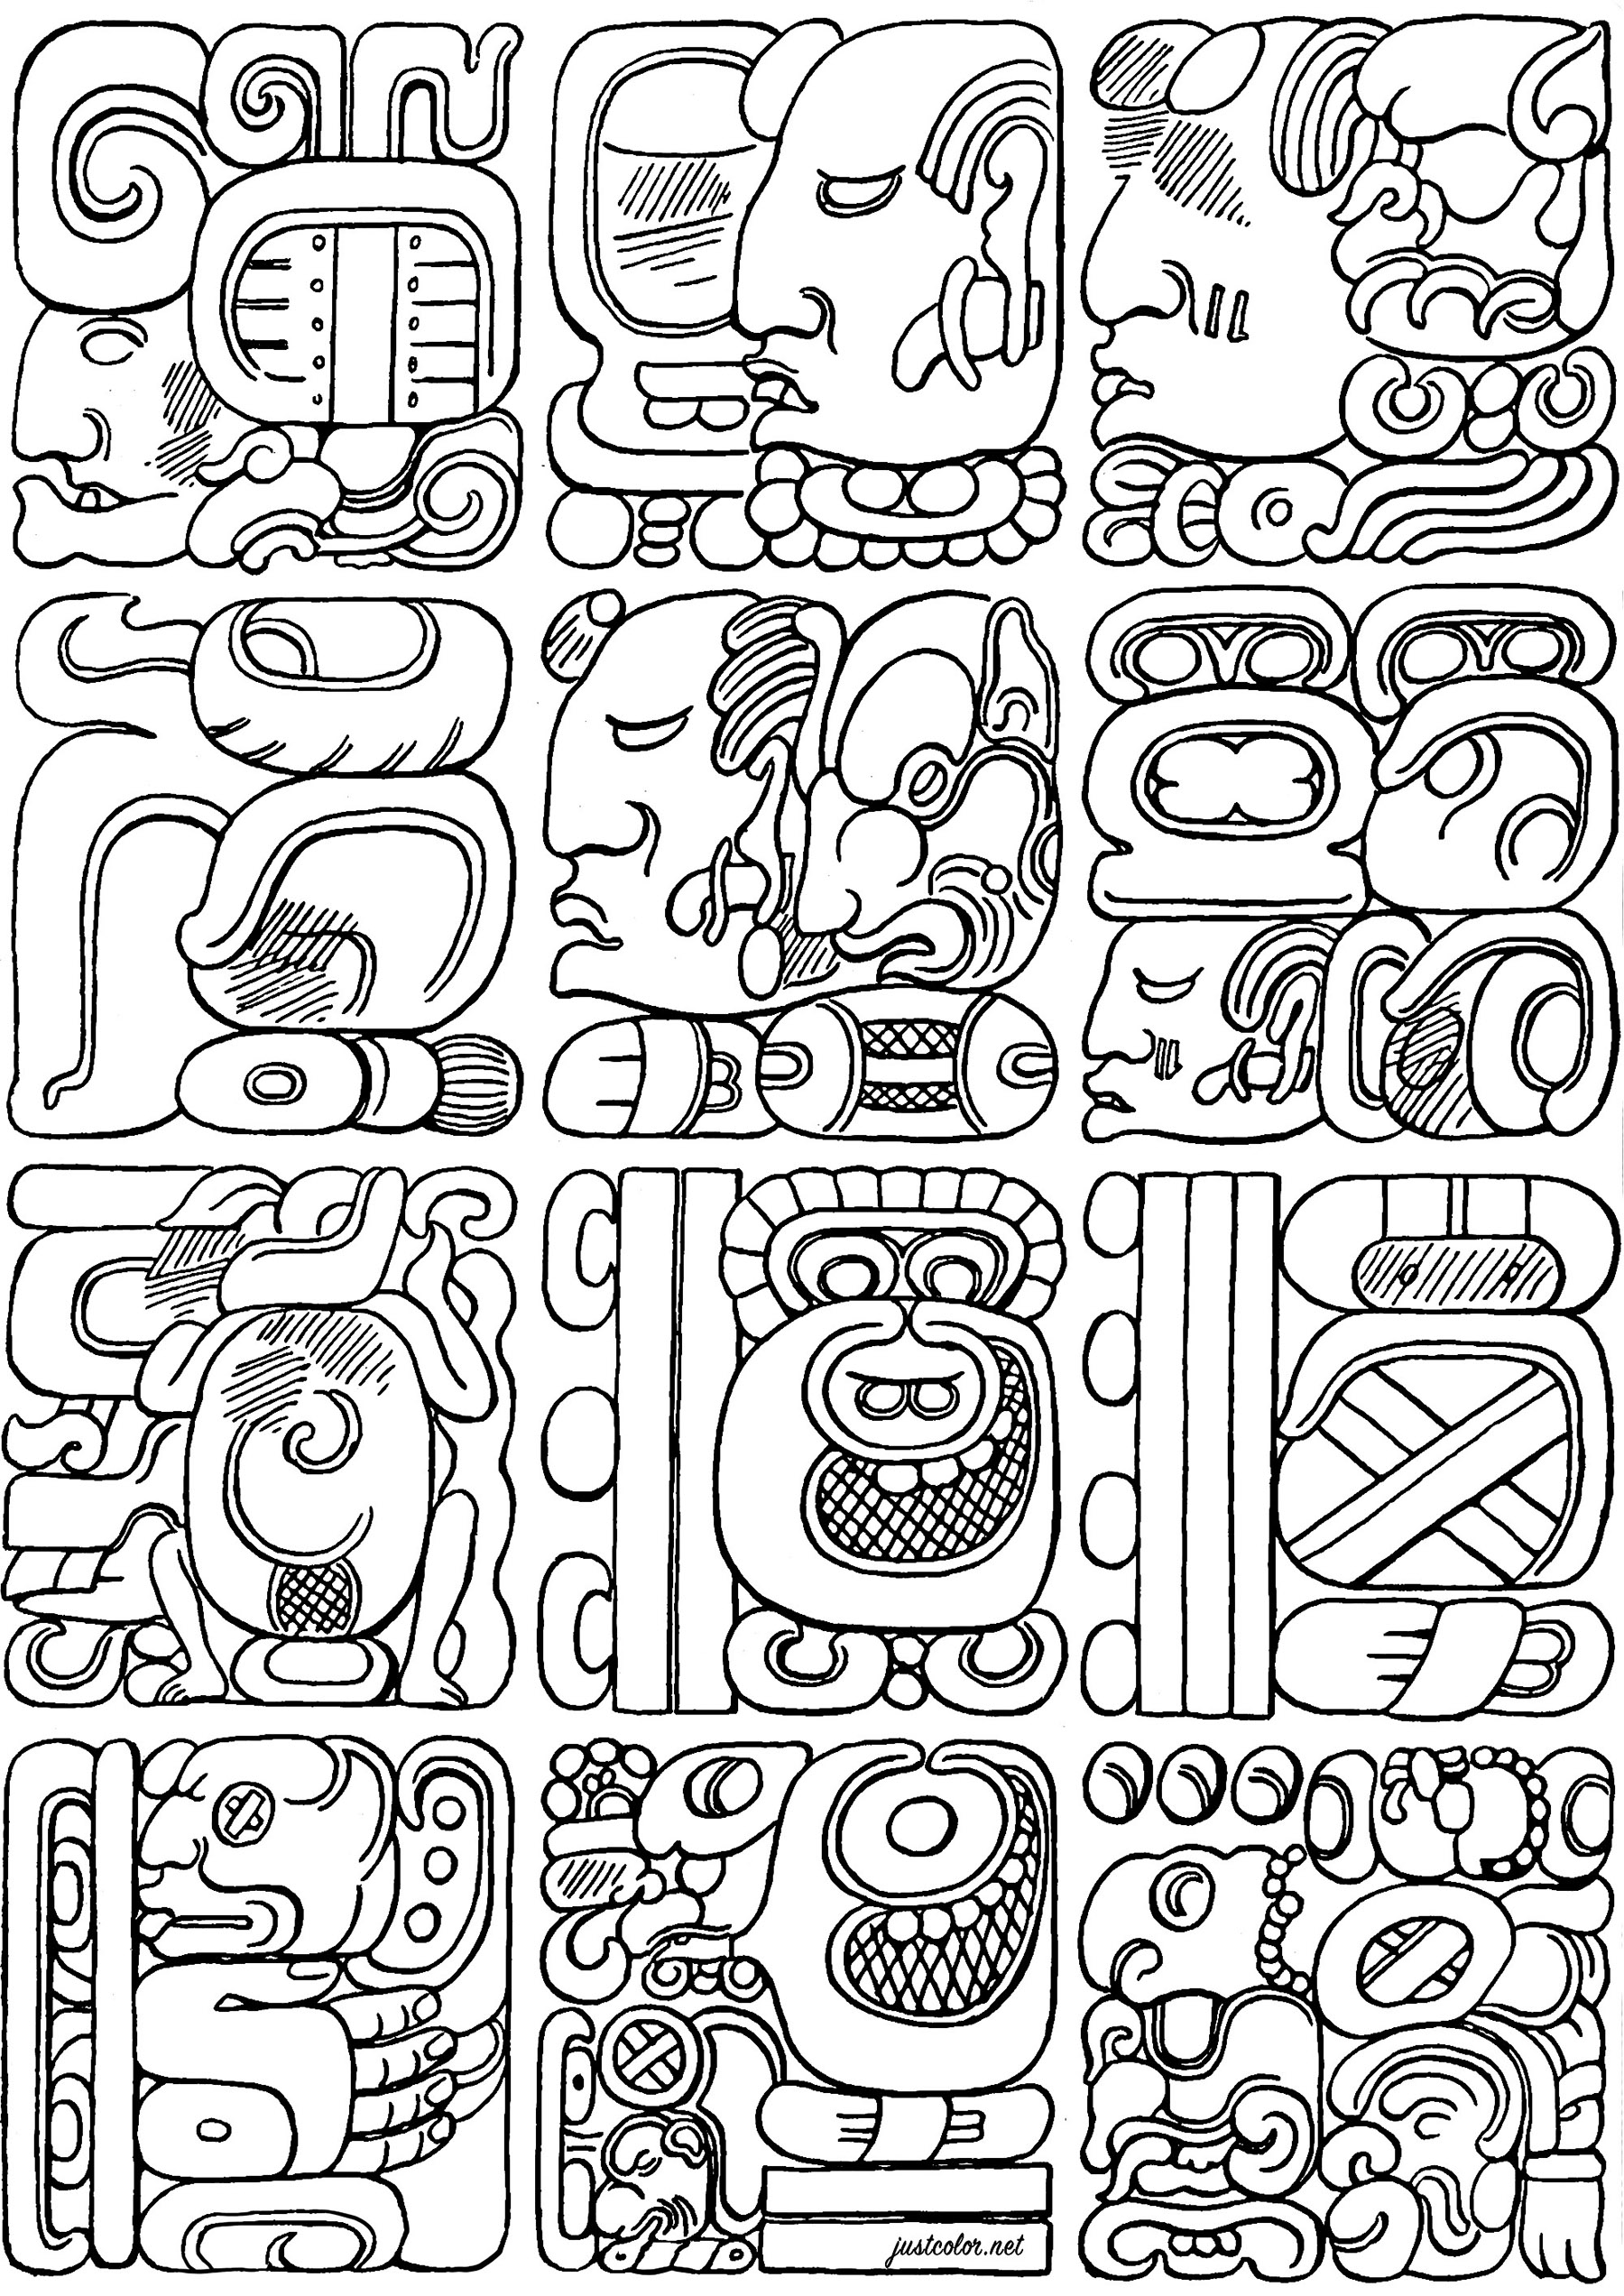 Colorazione creata a partire da autentici glifi Maya. I glifi maya sono uno dei pochi sistemi di scrittura completamente sviluppati nelle Americhe precolombiane e consentono di trascrivere le lingue maya con una precisione quasi perfetta.Attraverso le loro complesse iscrizioni glifiche, i Maya registrarono eventi storici, miti, matematica e osservazioni astronomiche che continuano ad affascinare i ricercatori di oggi.